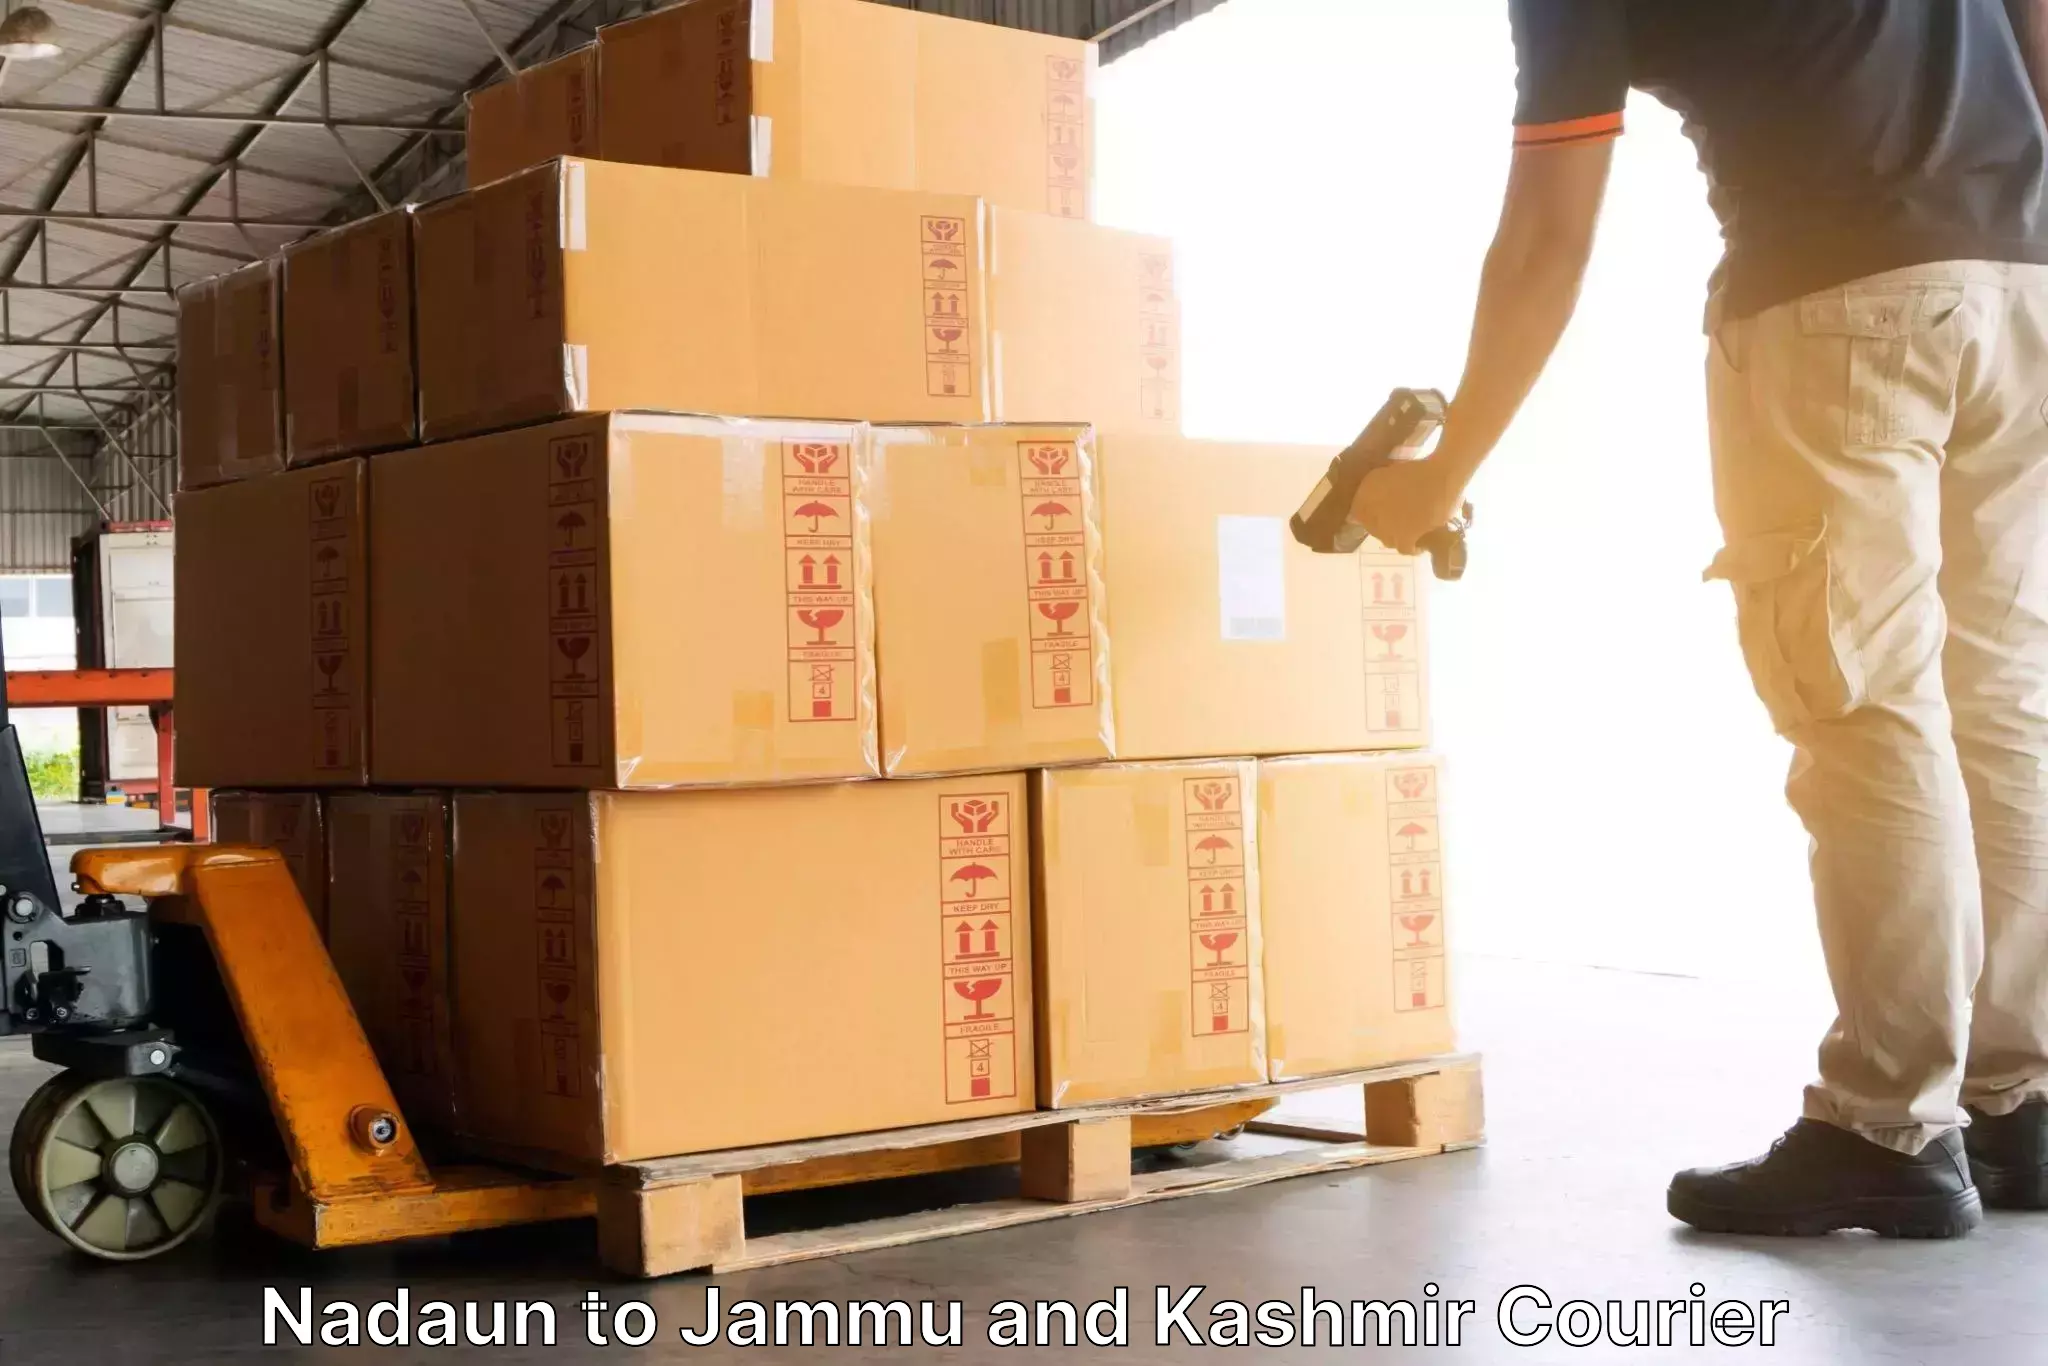 Courier service partnerships Nadaun to Katra